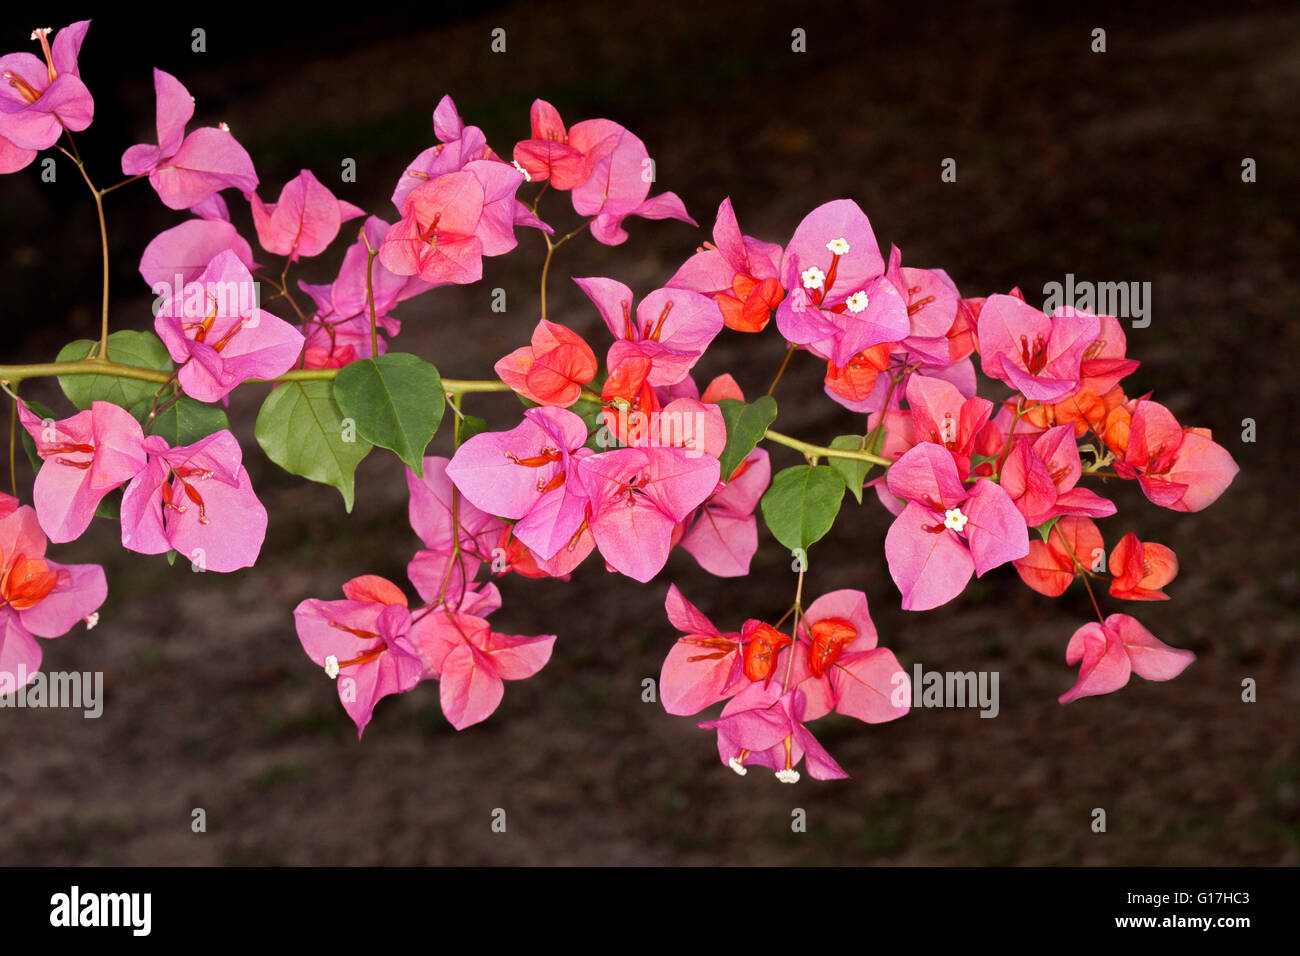 Grappe de fleurs rose vif et les feuilles de bougainvillées bambino variété naine 'Bokay' sur un fond sombre Banque D'Images